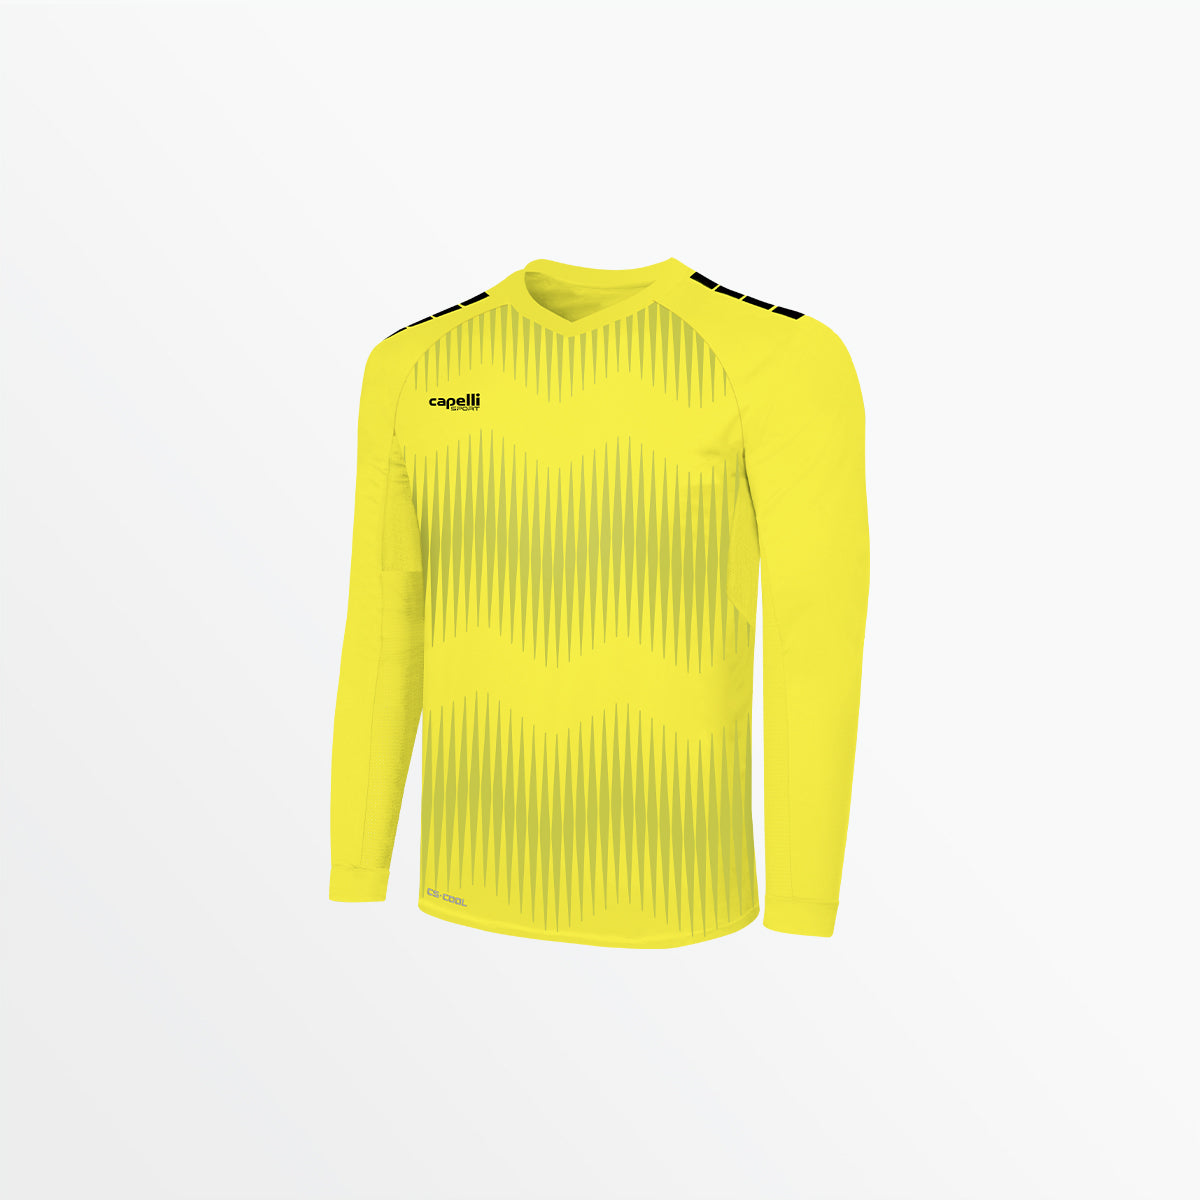 Nike Gardien III Goalkeeper Kit (Jersey Shorts Socks)